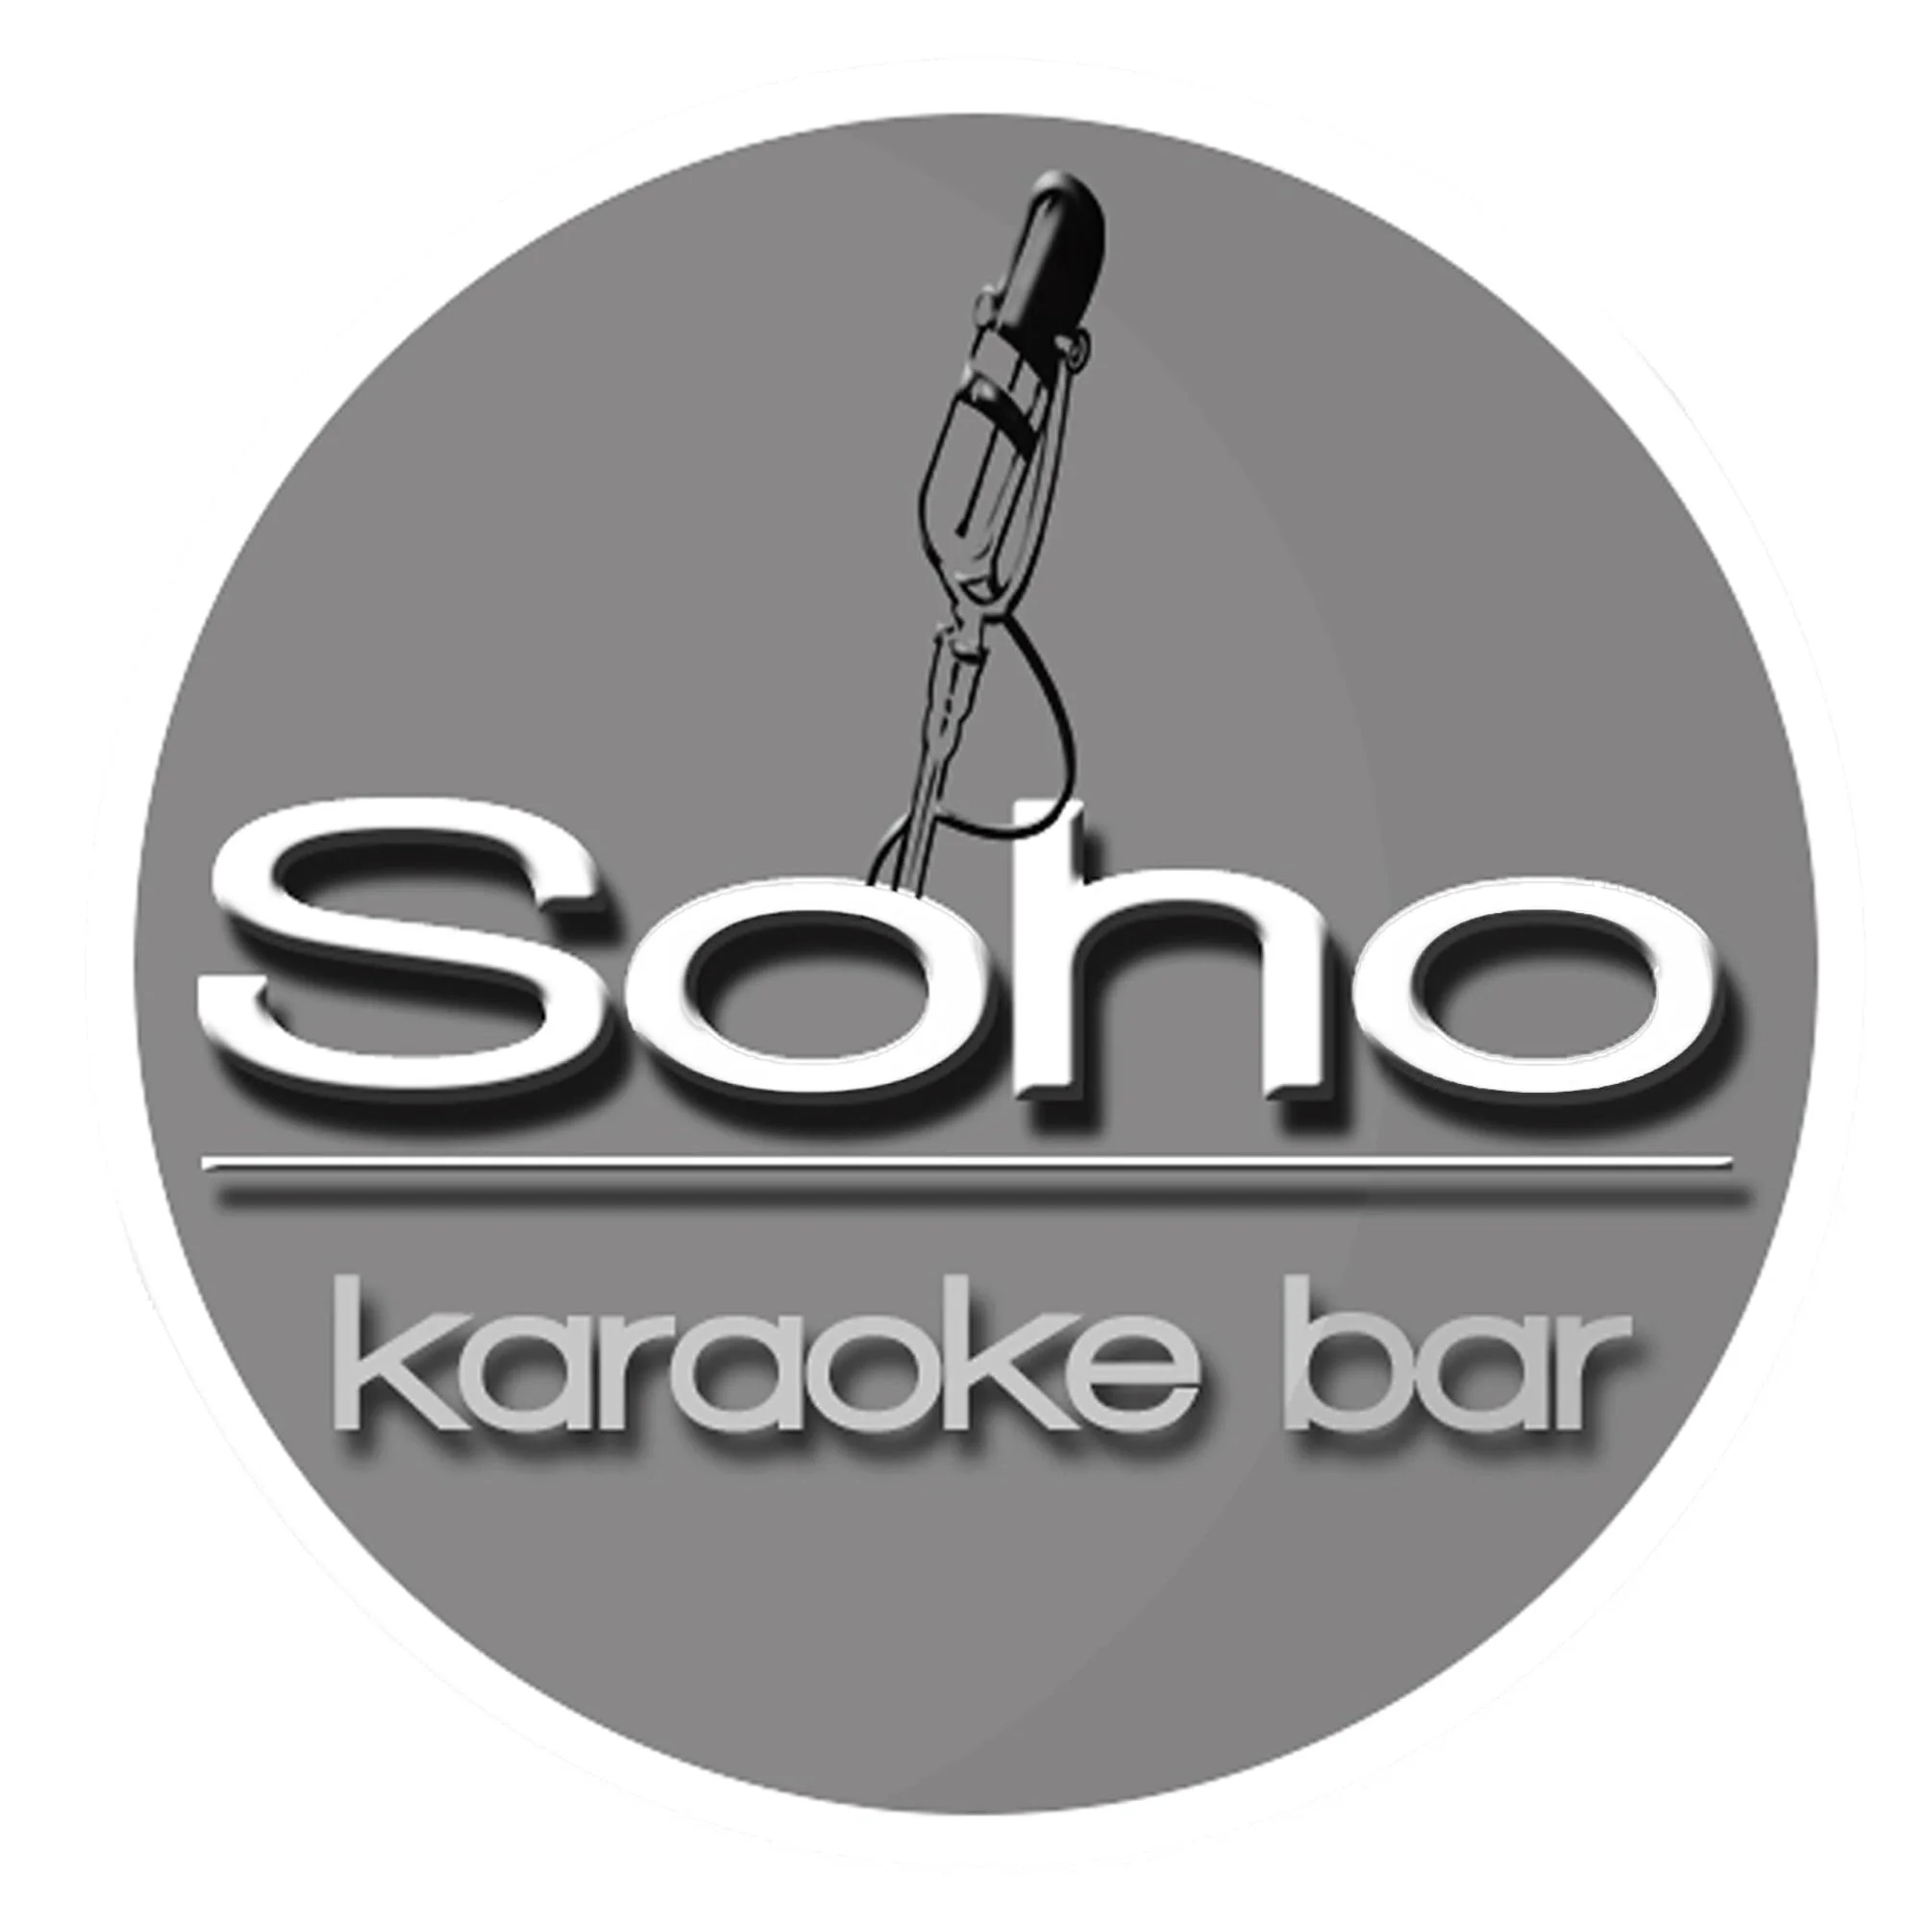 Soho Karaoke Bar-10452